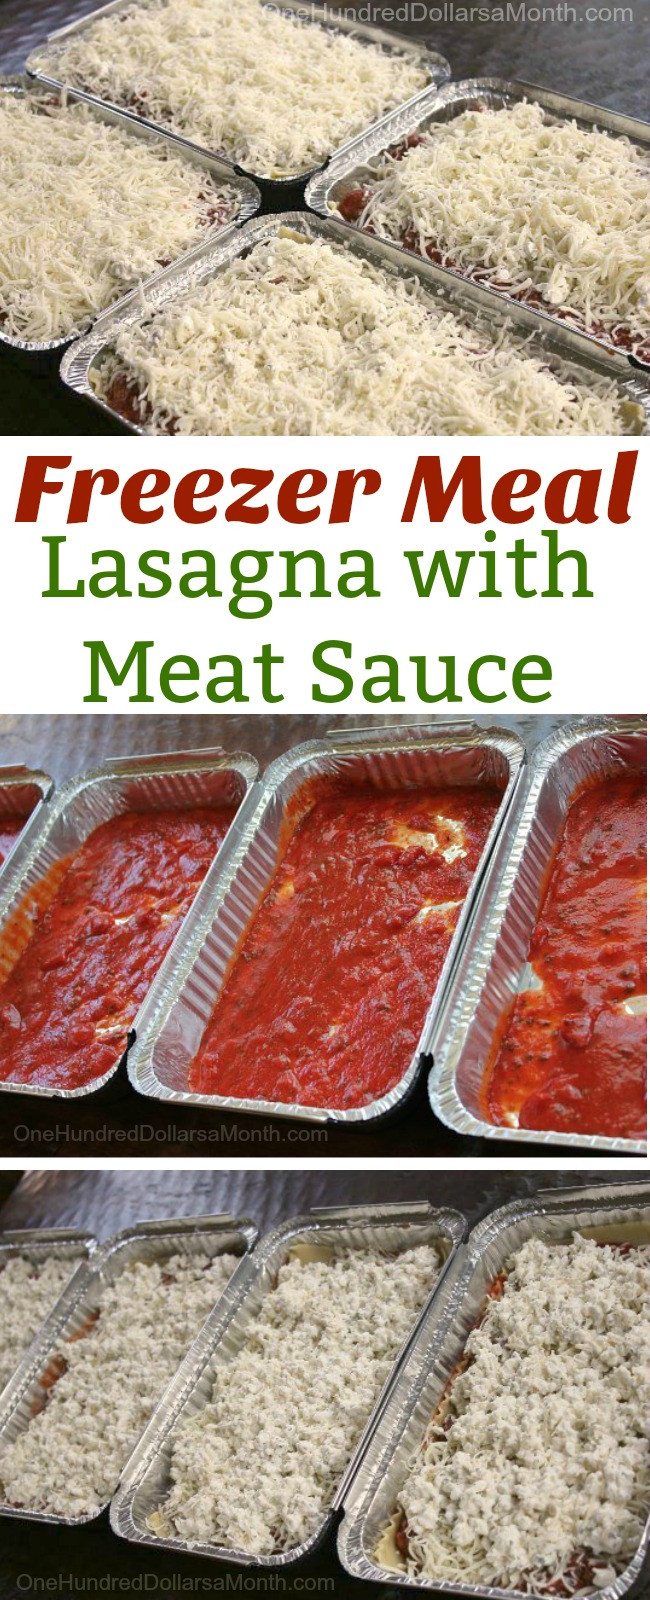 Lasagna Freezer Meal
 Freezer Meal Recipe Lasagna with Meat Sauce e